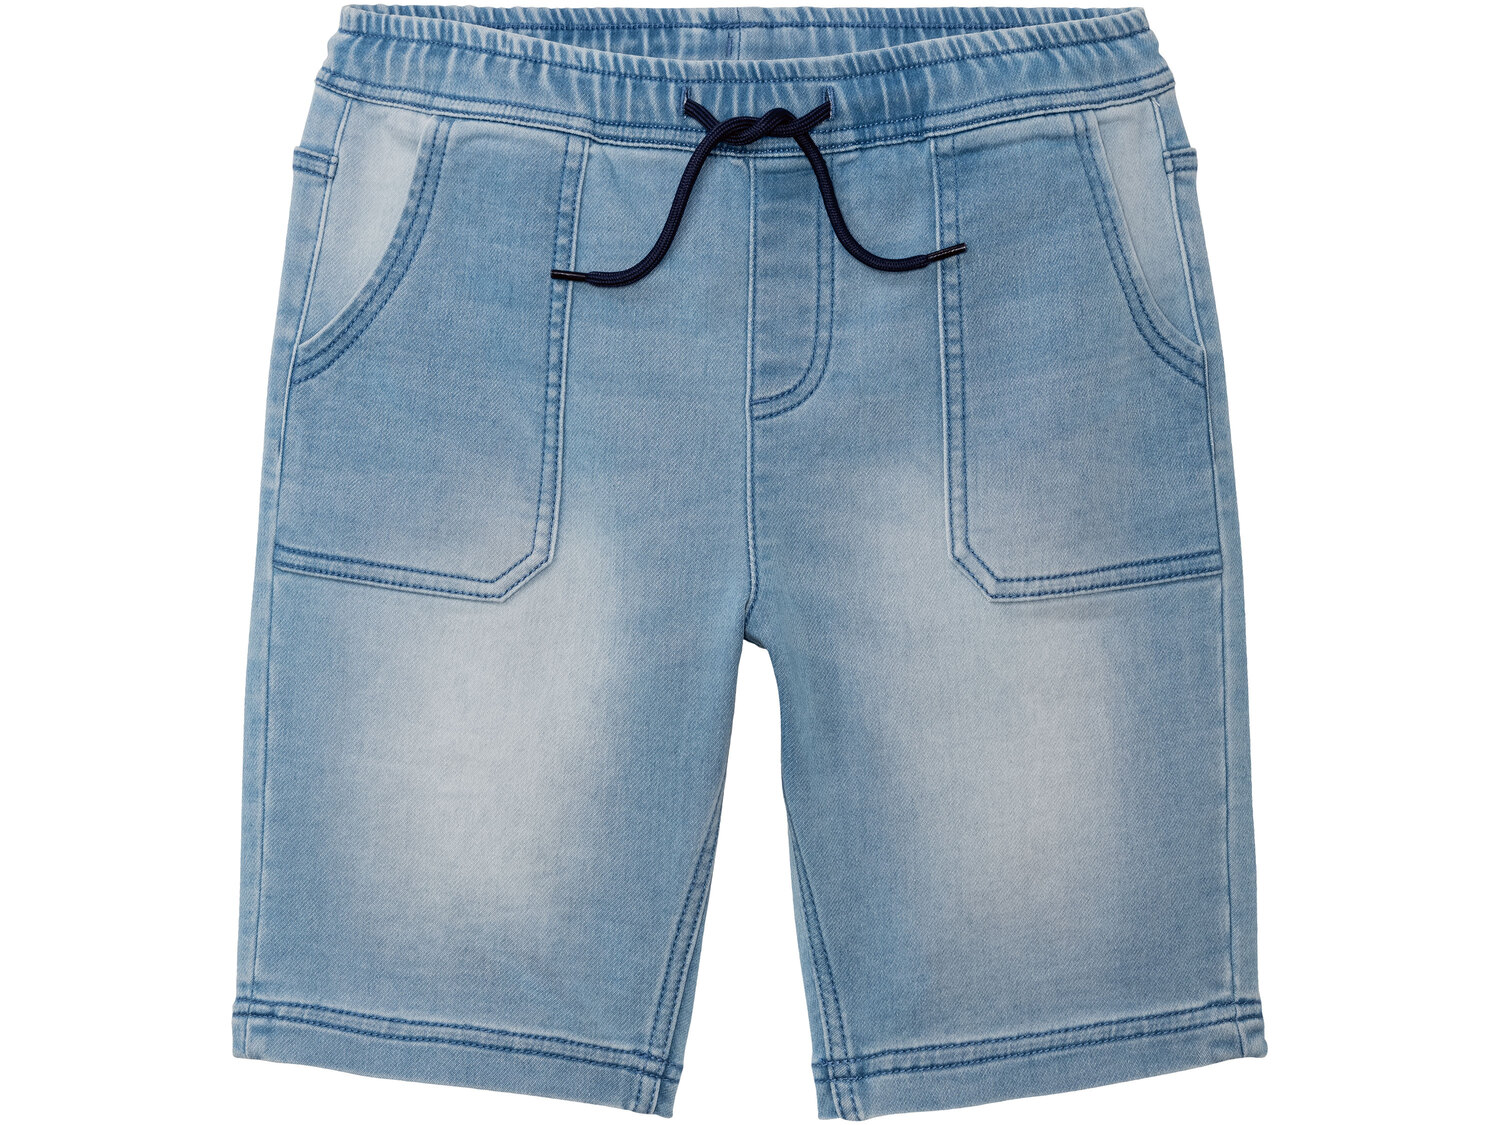 Szorty jeansowe chłopięce , cena 29,99 PLN 
- rozmiary: 146-176
- wysoka zawartość ...